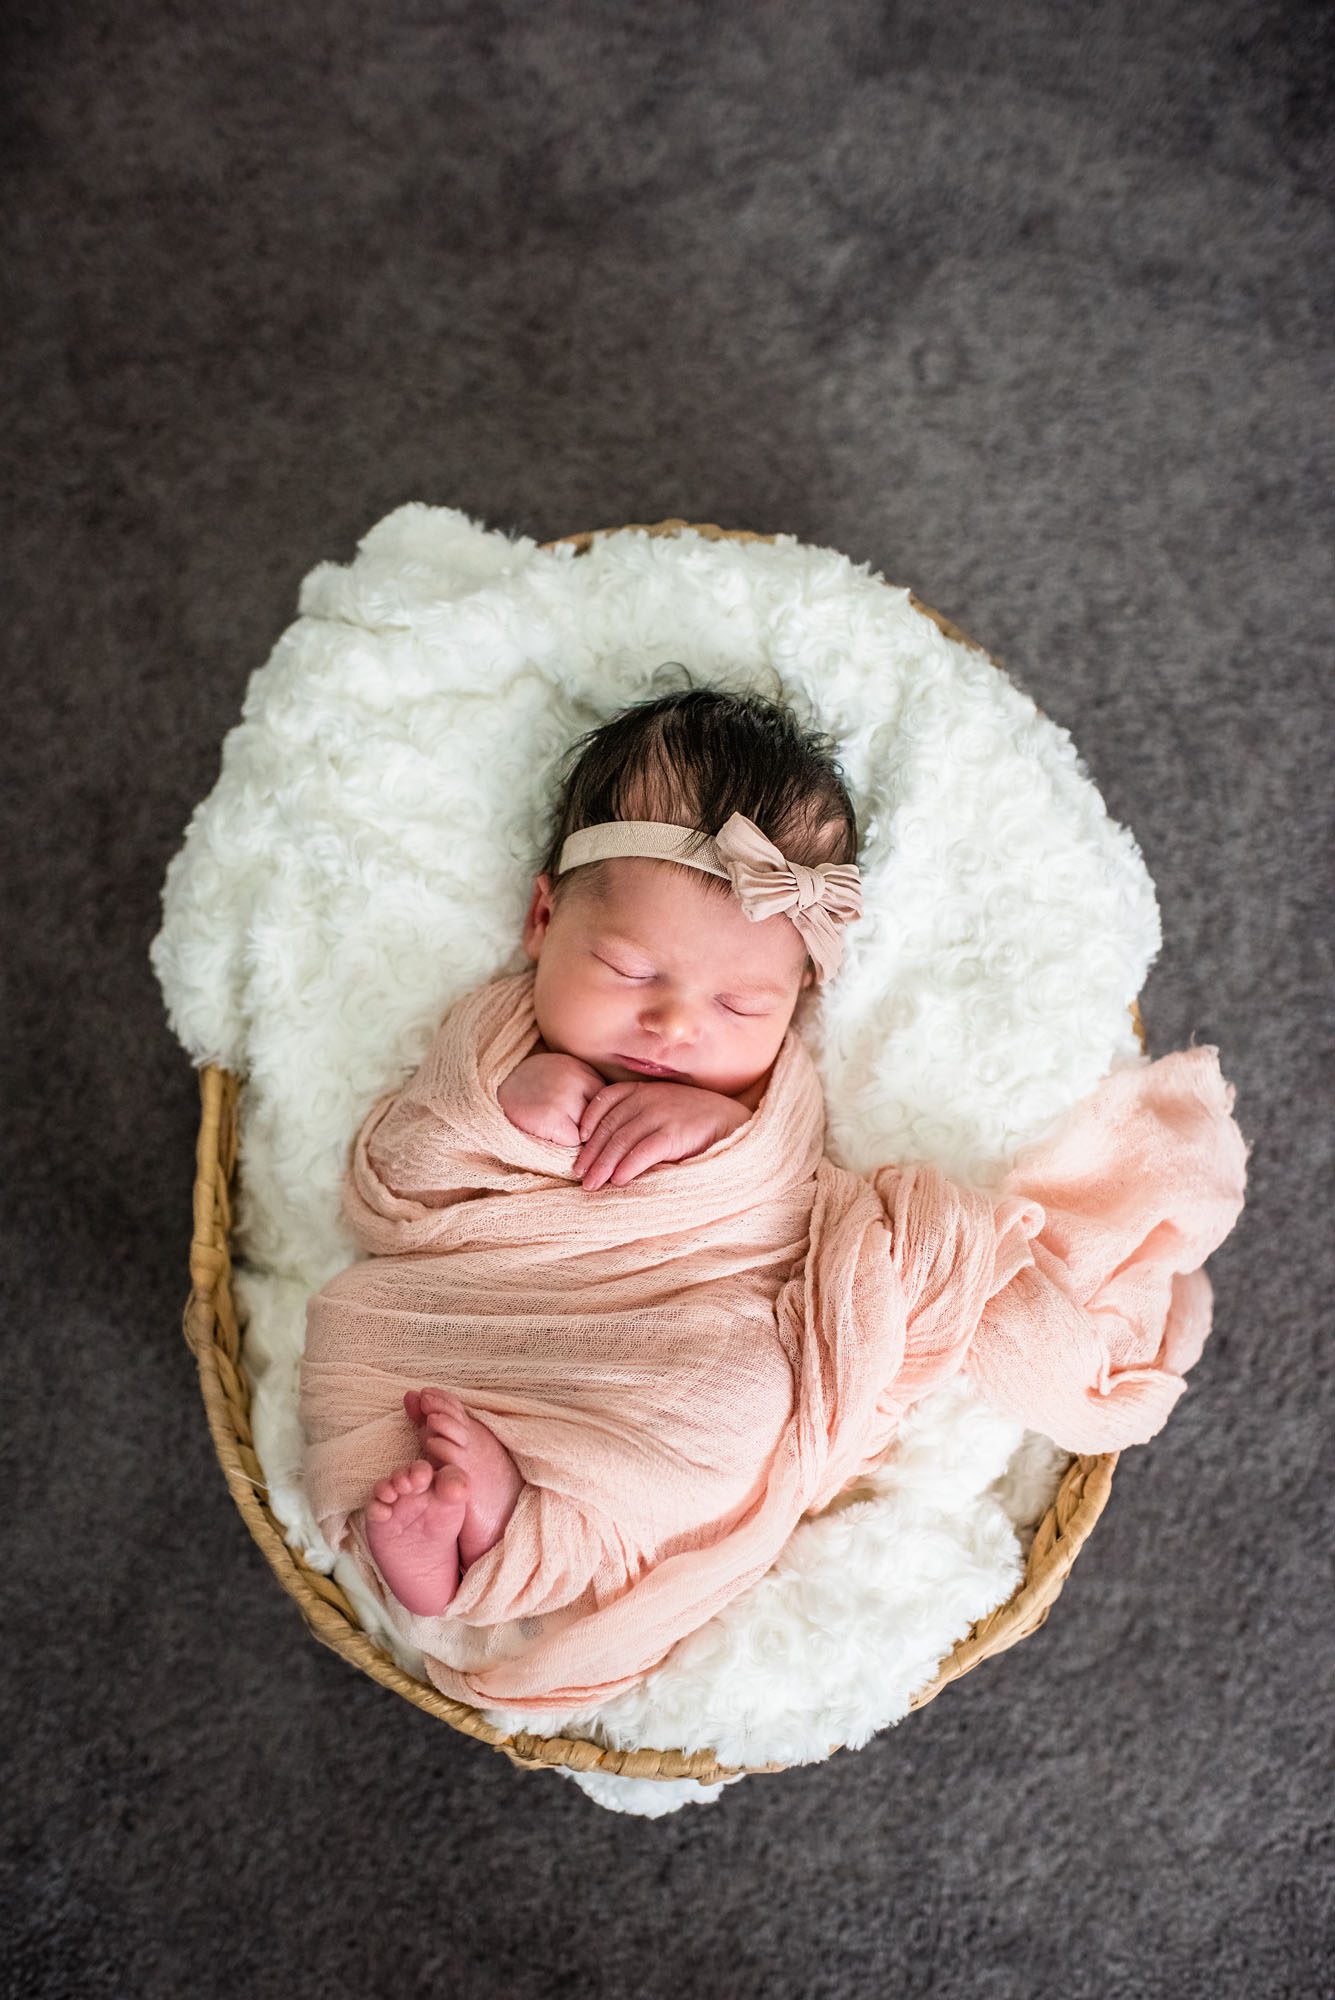 Newborn baby in basket, San Antonio area Newborn Photographer